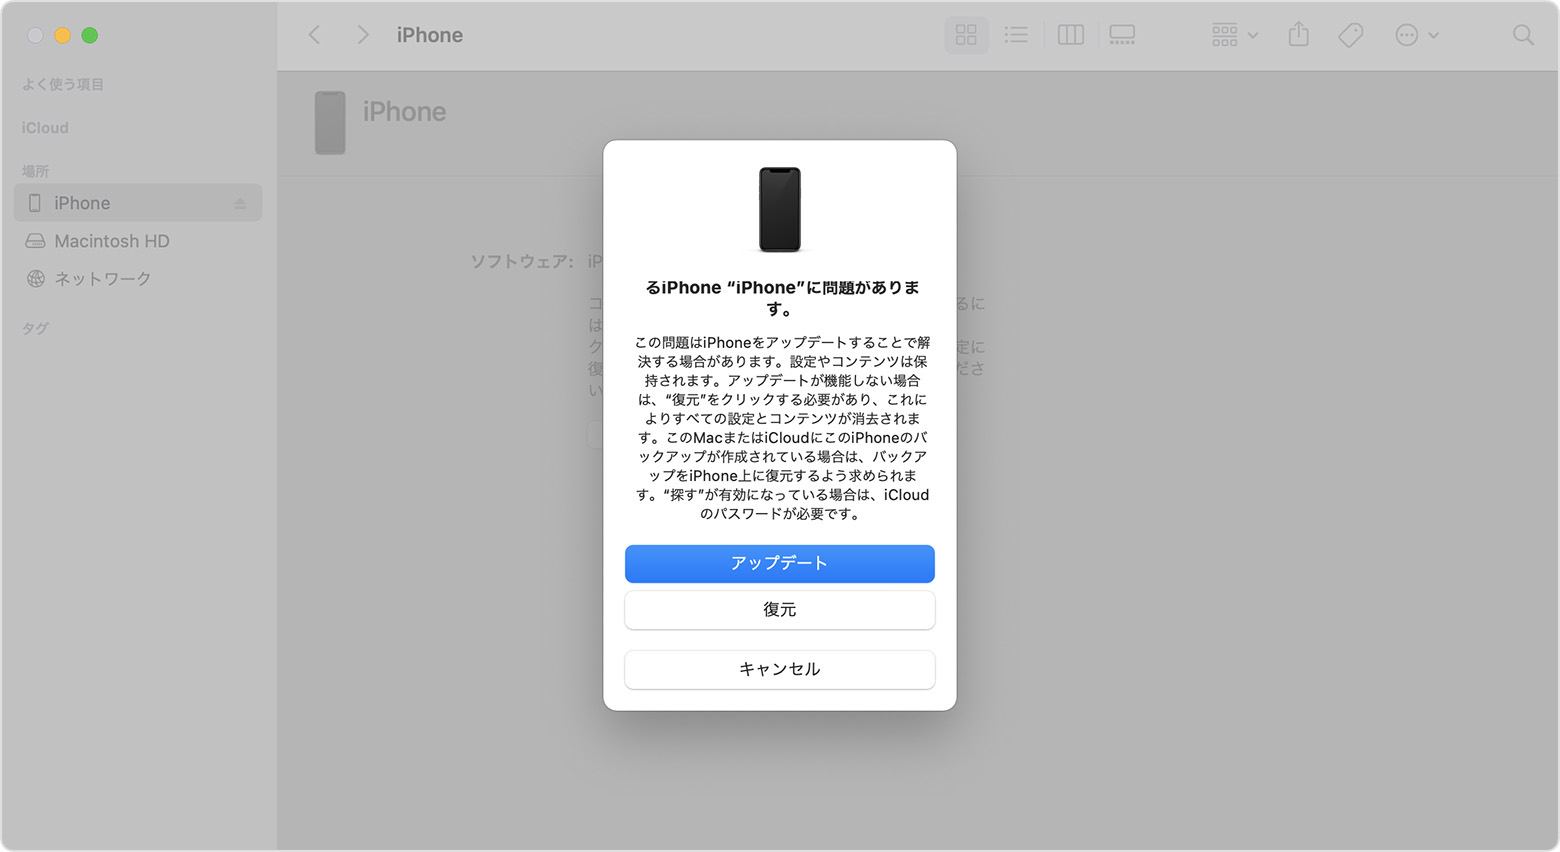 Finder のウインドウに iPhone をアップデートするか復元するかの選択肢を提示するダイアログが表示されているところ。「アップデート」が選択されています。